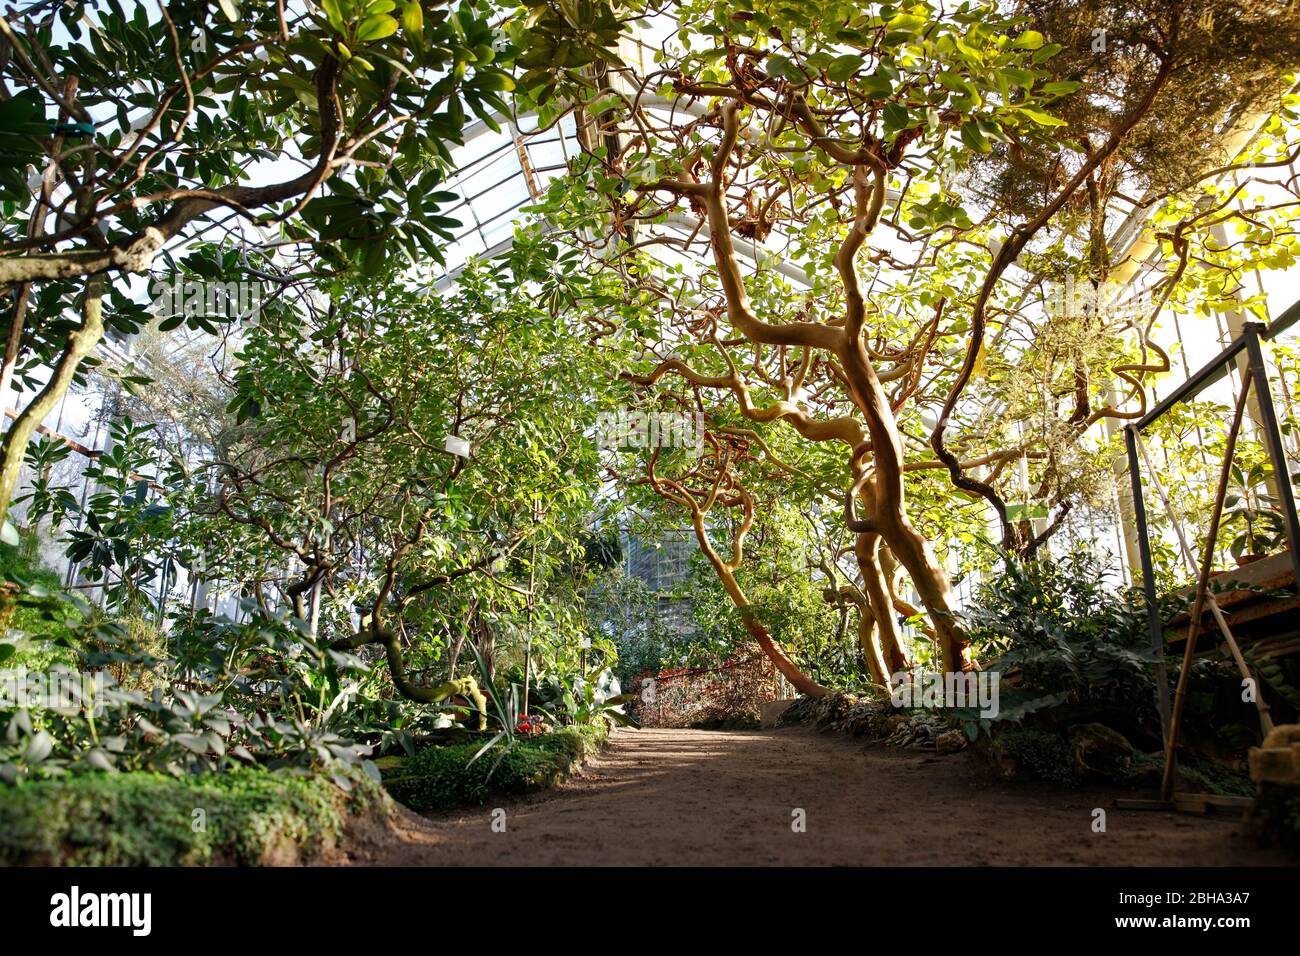 Tropisches Gewächshaus mit immergrünen blühenden Pflanzen, verwinkelte Bäume an sonnigen Tagen mit schönem Licht und Sonnenstrahlen. Exotische tropische Pflanzen in botanica Stockfoto